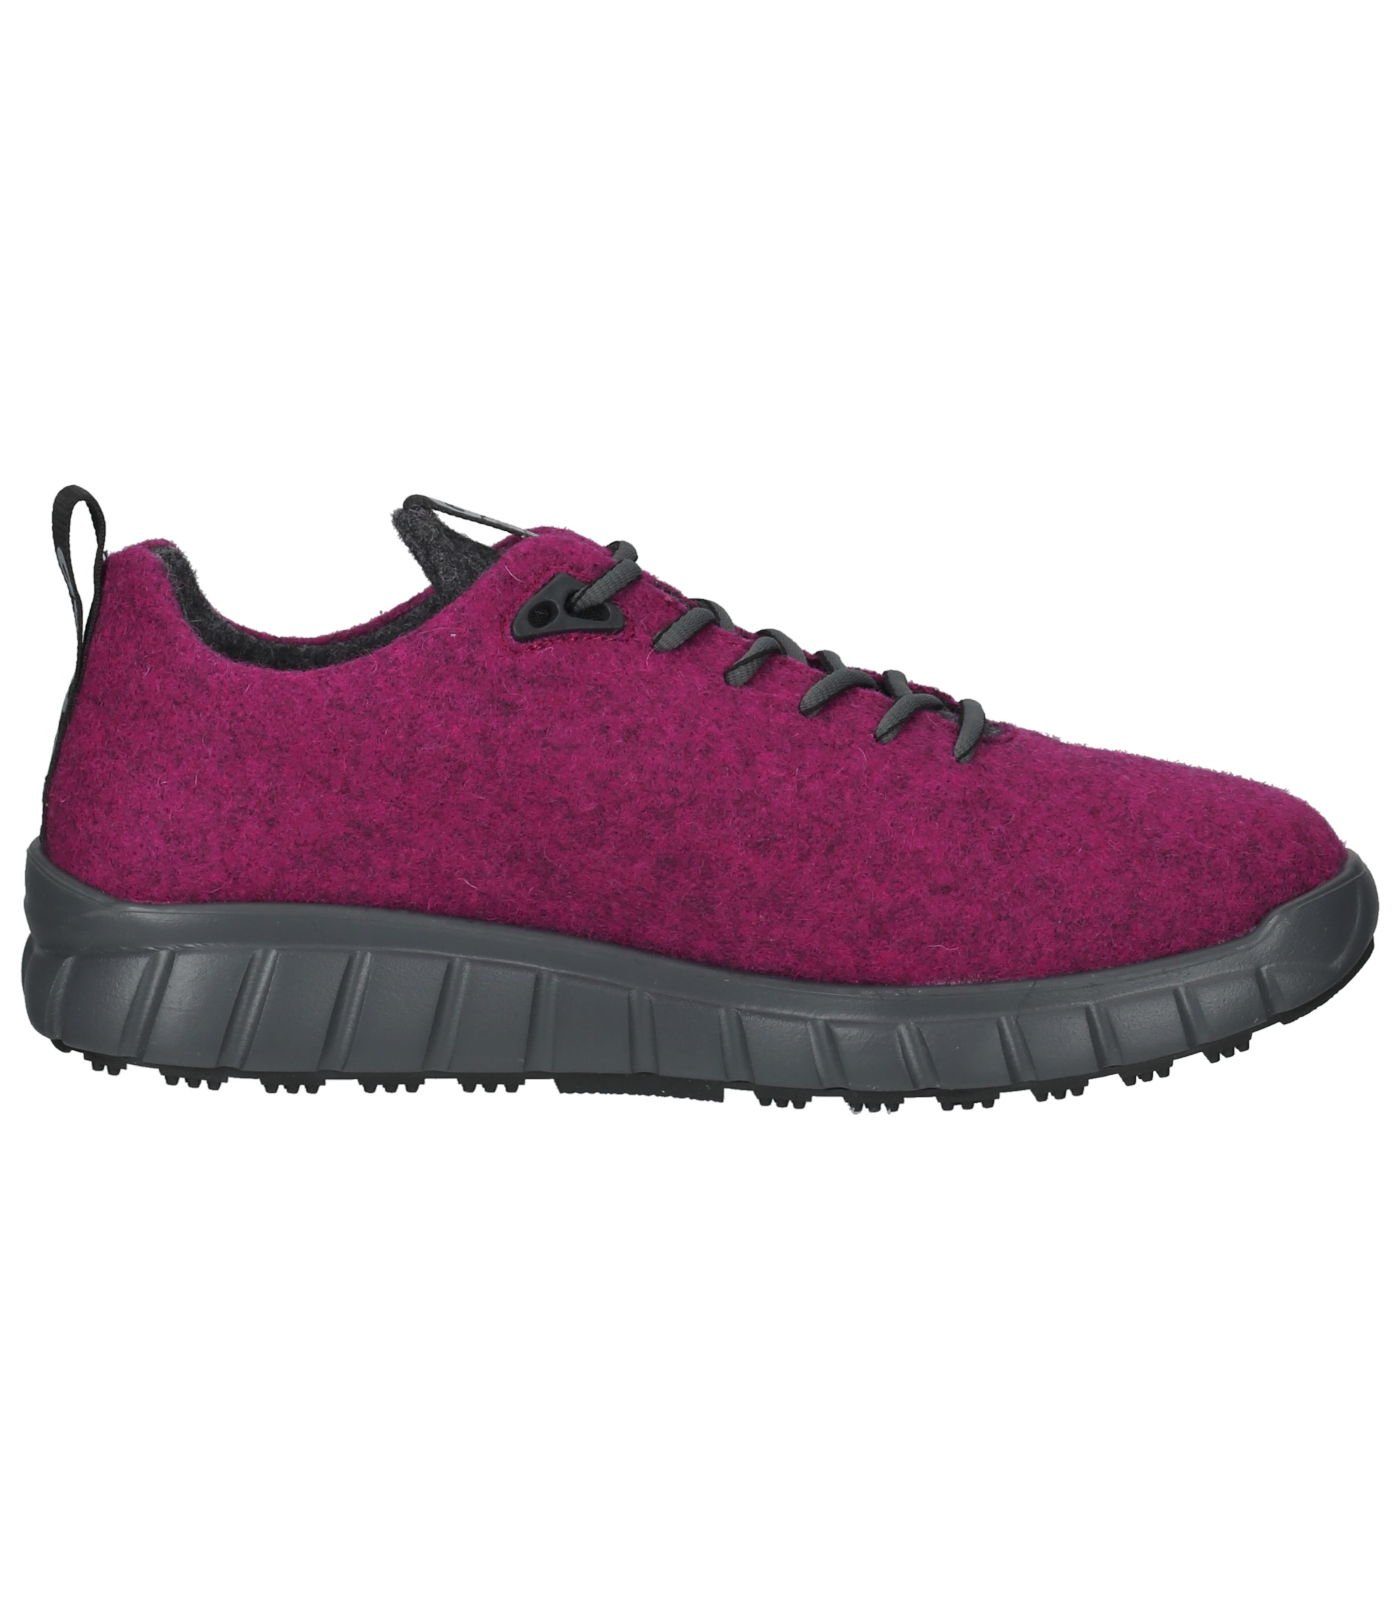 Pink Lederimitat/Textil Sneaker Sneaker Ganter